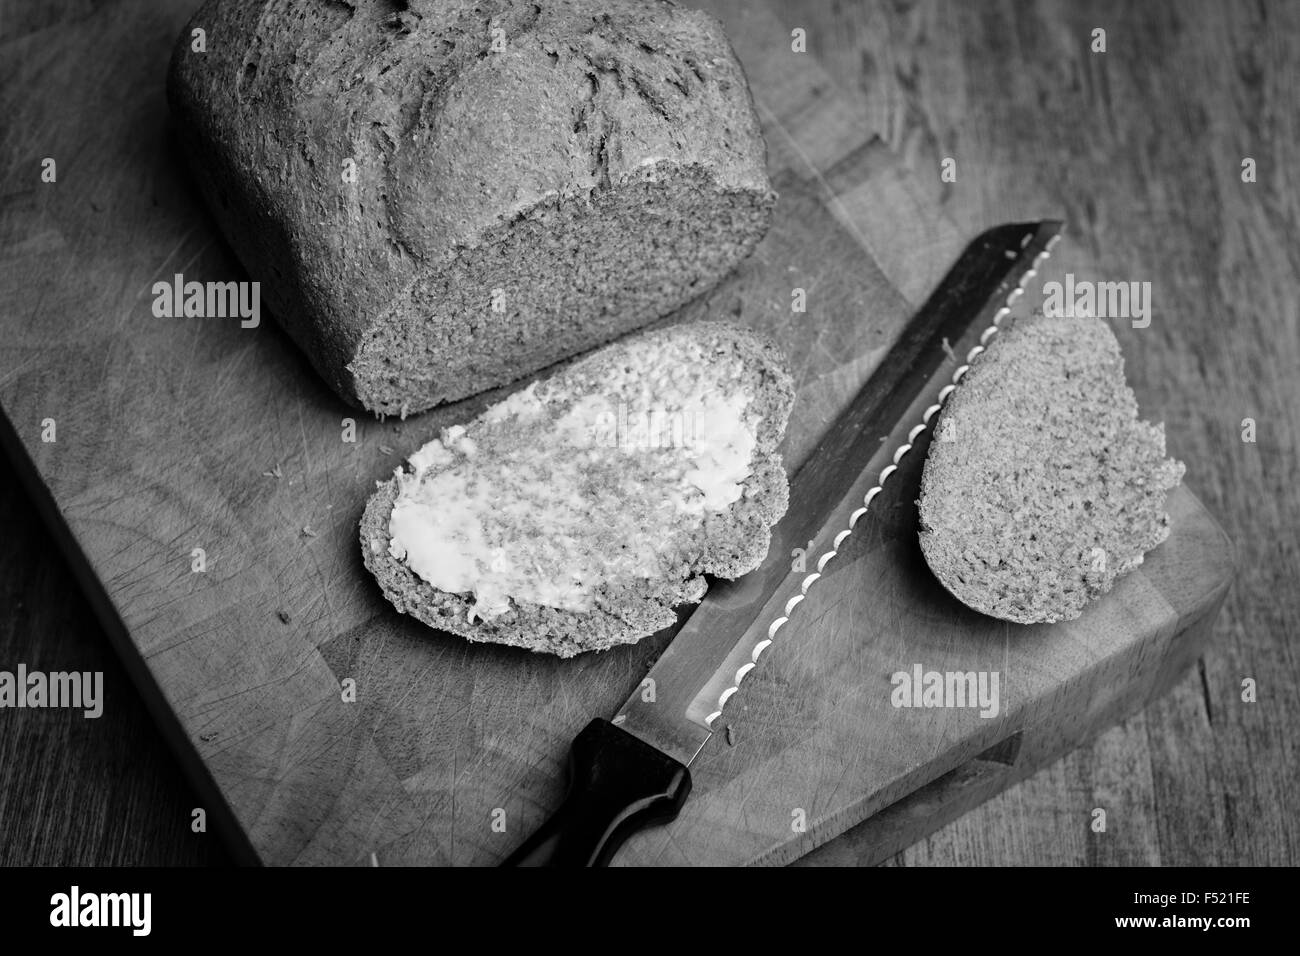 Pane appena sfornato pagnotta di pane con una fetta imburrata in bianco e nero Foto Stock